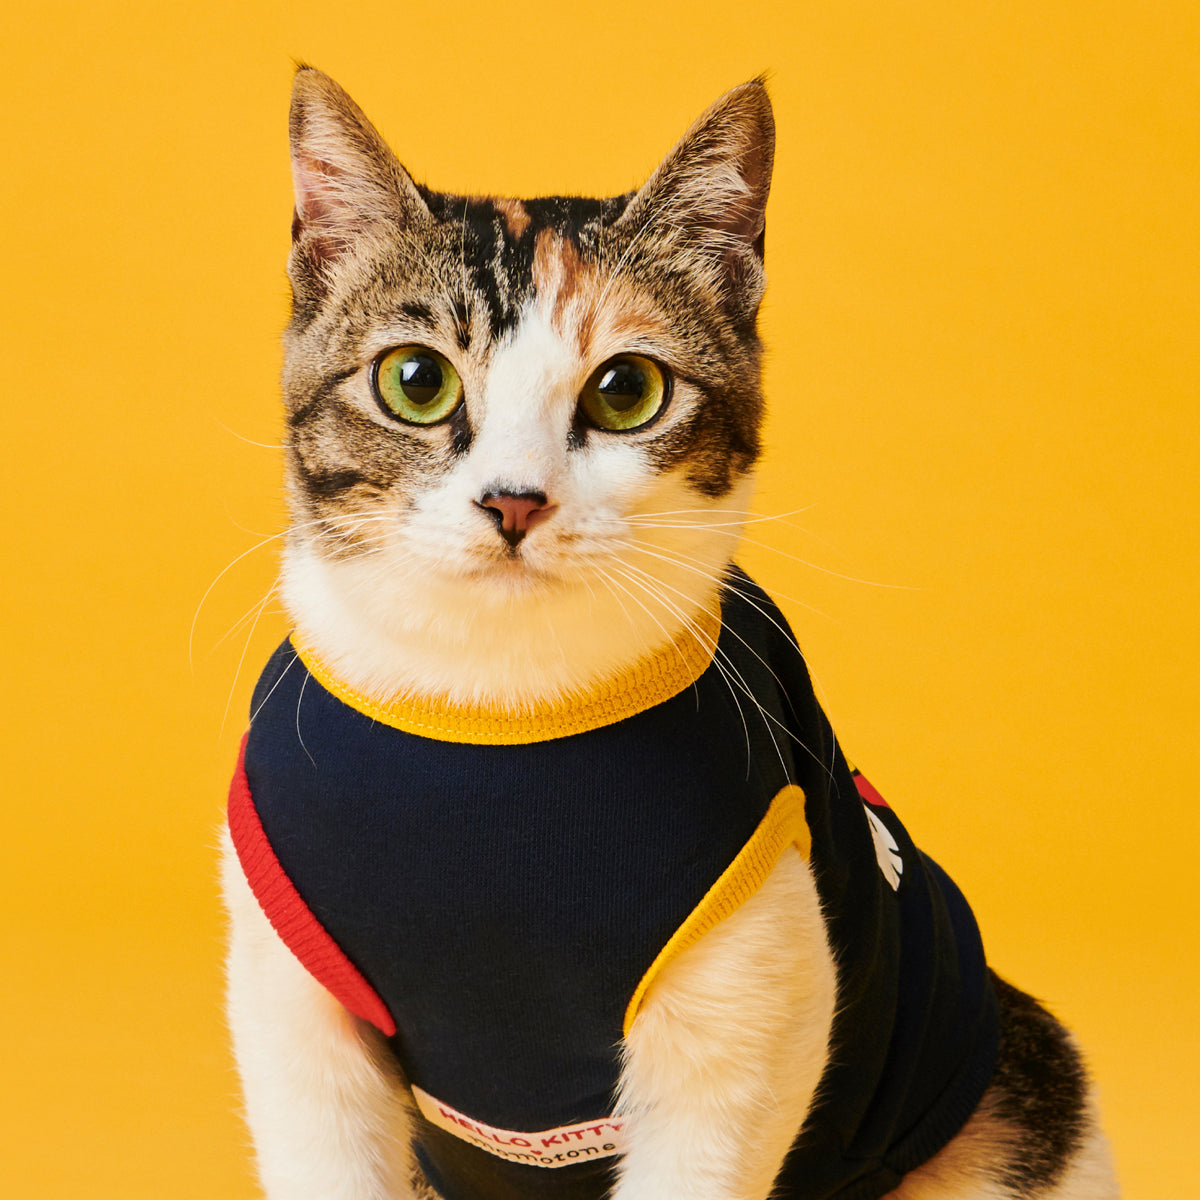 Hello Kitty ❤ momotone / on foot vest